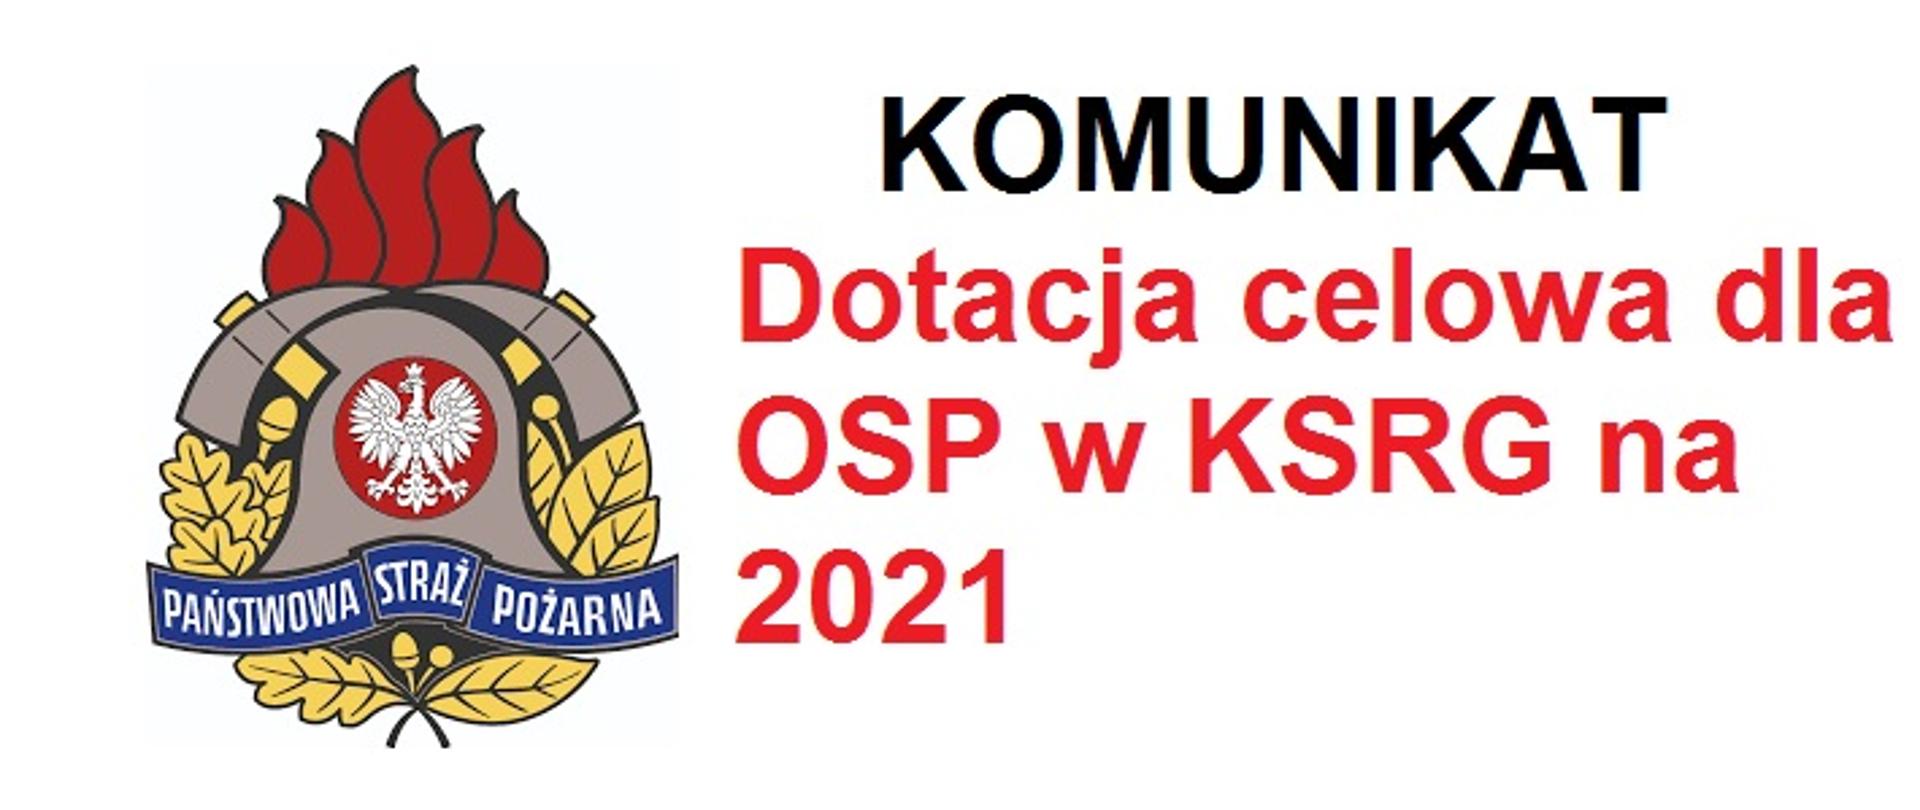 Na białym tle kolorowe logo Państwowej Straży Pożarnej i tekst Komunikat dotacja celowa dla OSP w KSRG na 2021